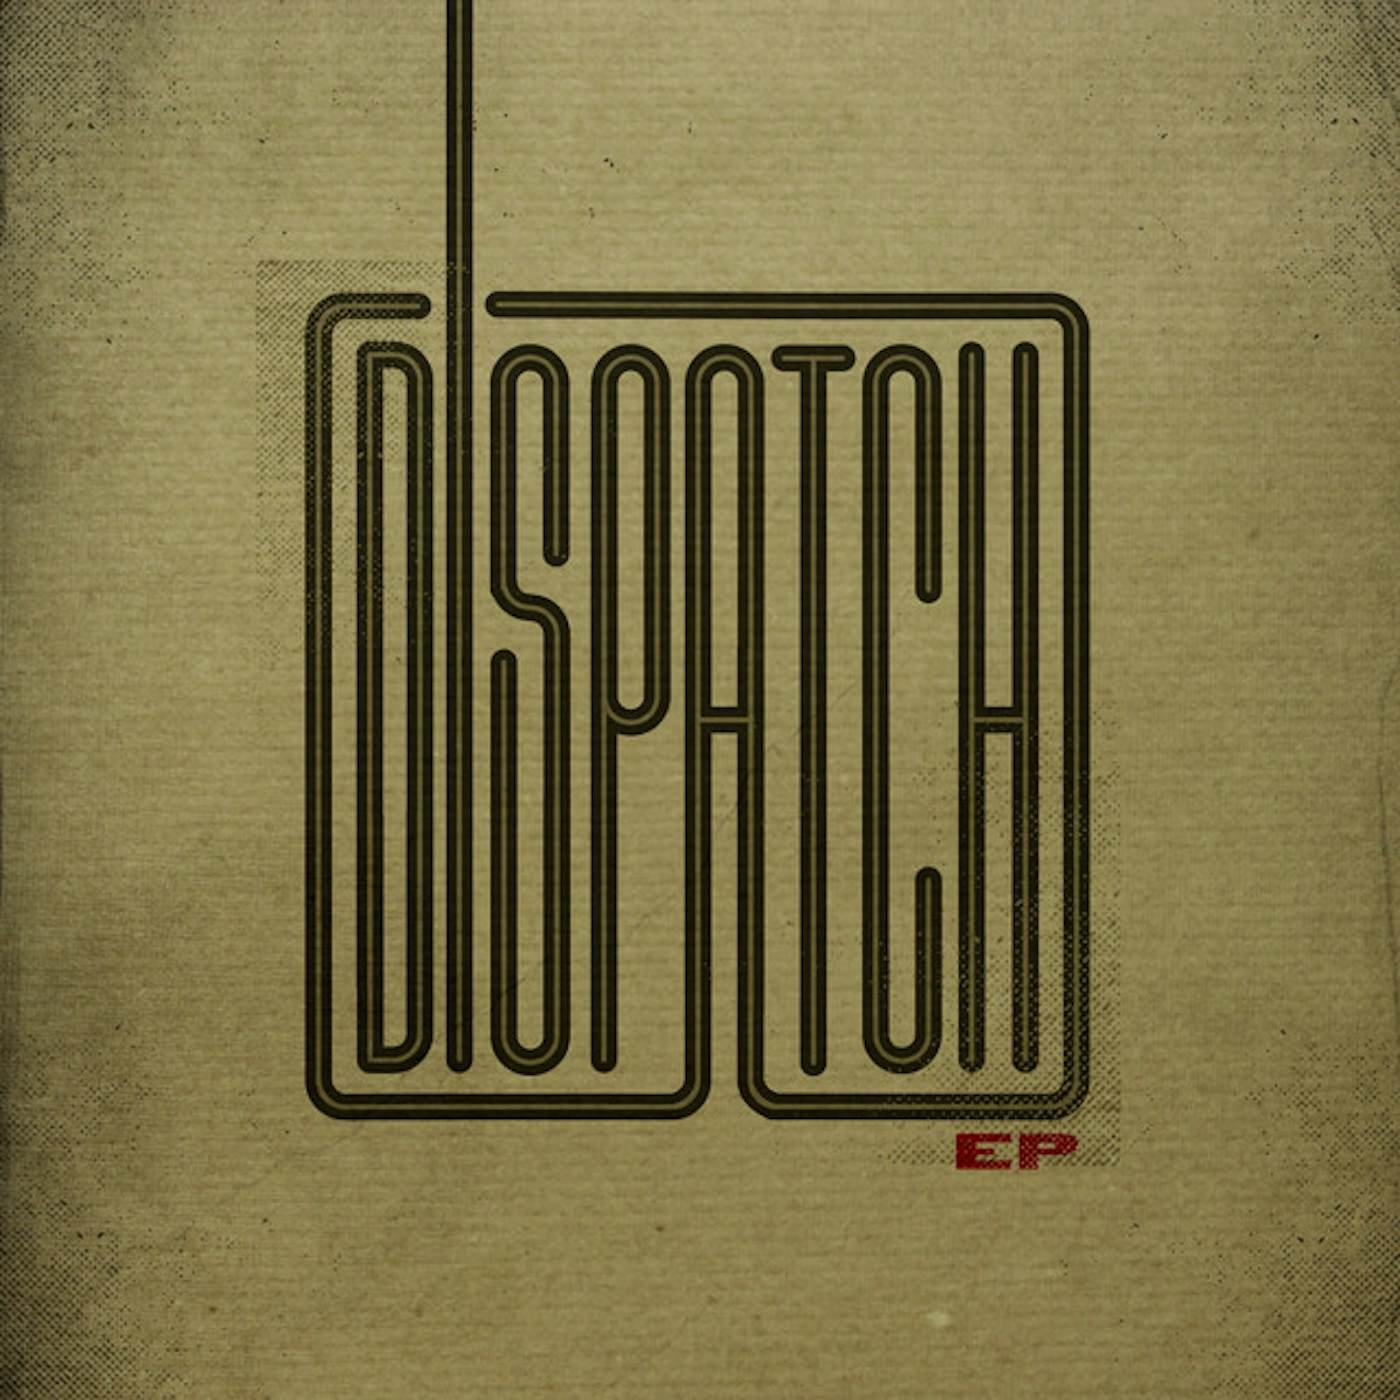 Dispatch Vinyl Record